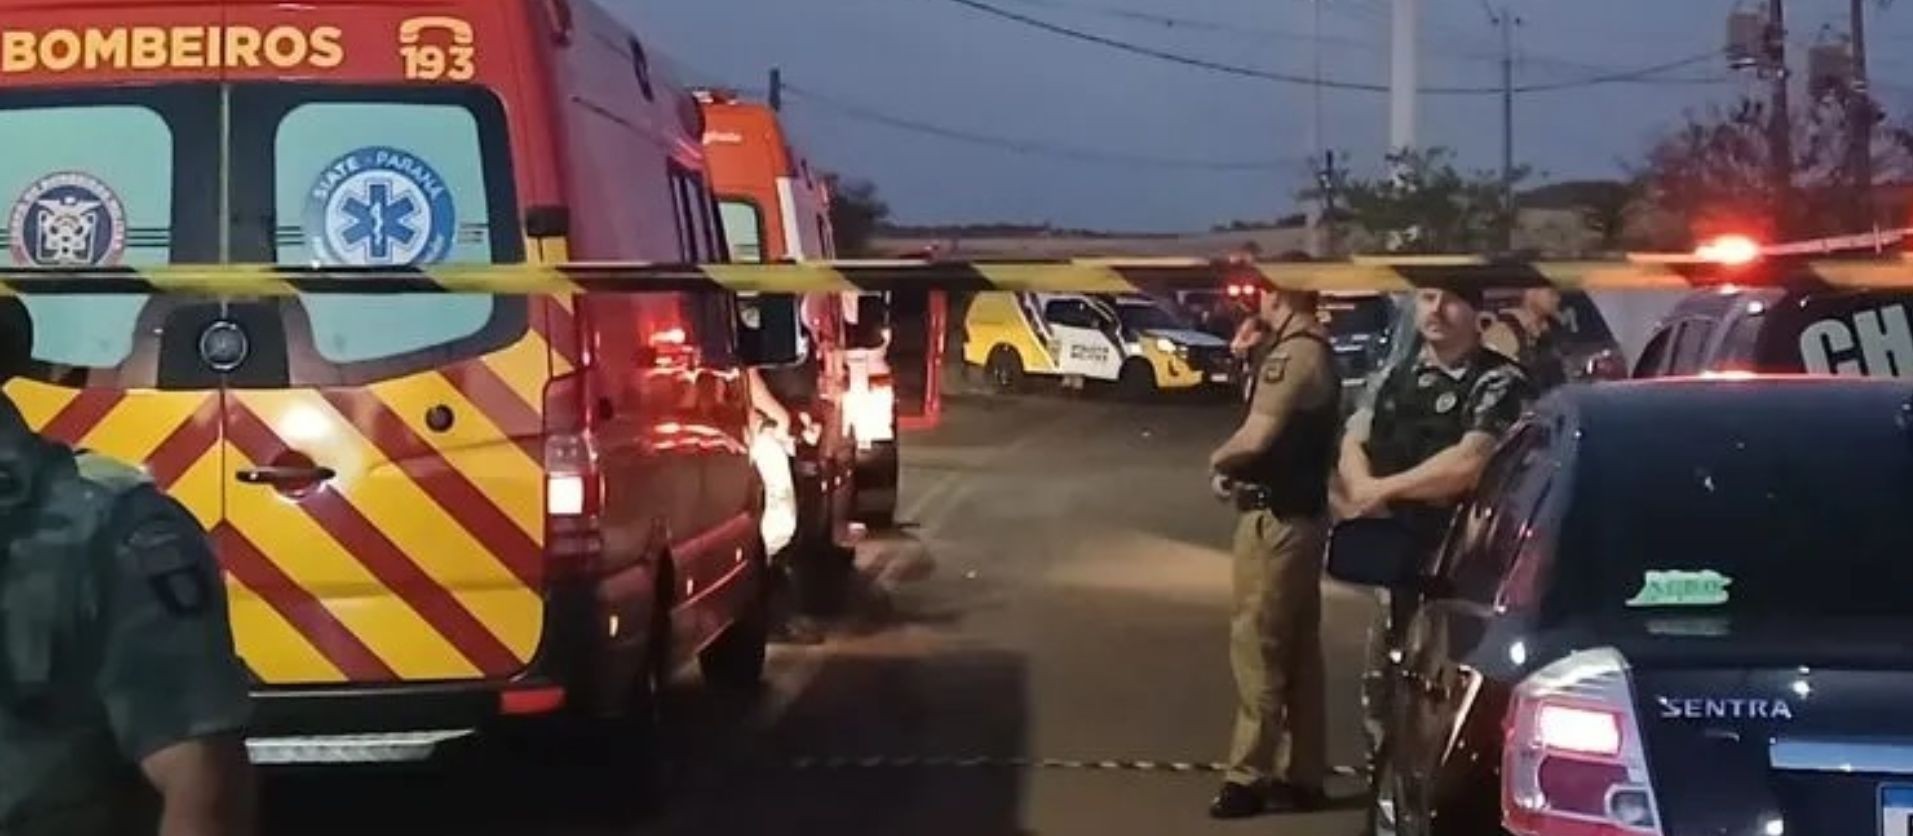 Segundo perícia, sol pode ter atrapalhado visão de motorista que atropelou e matou quatro crianças na zona rural de Londrina